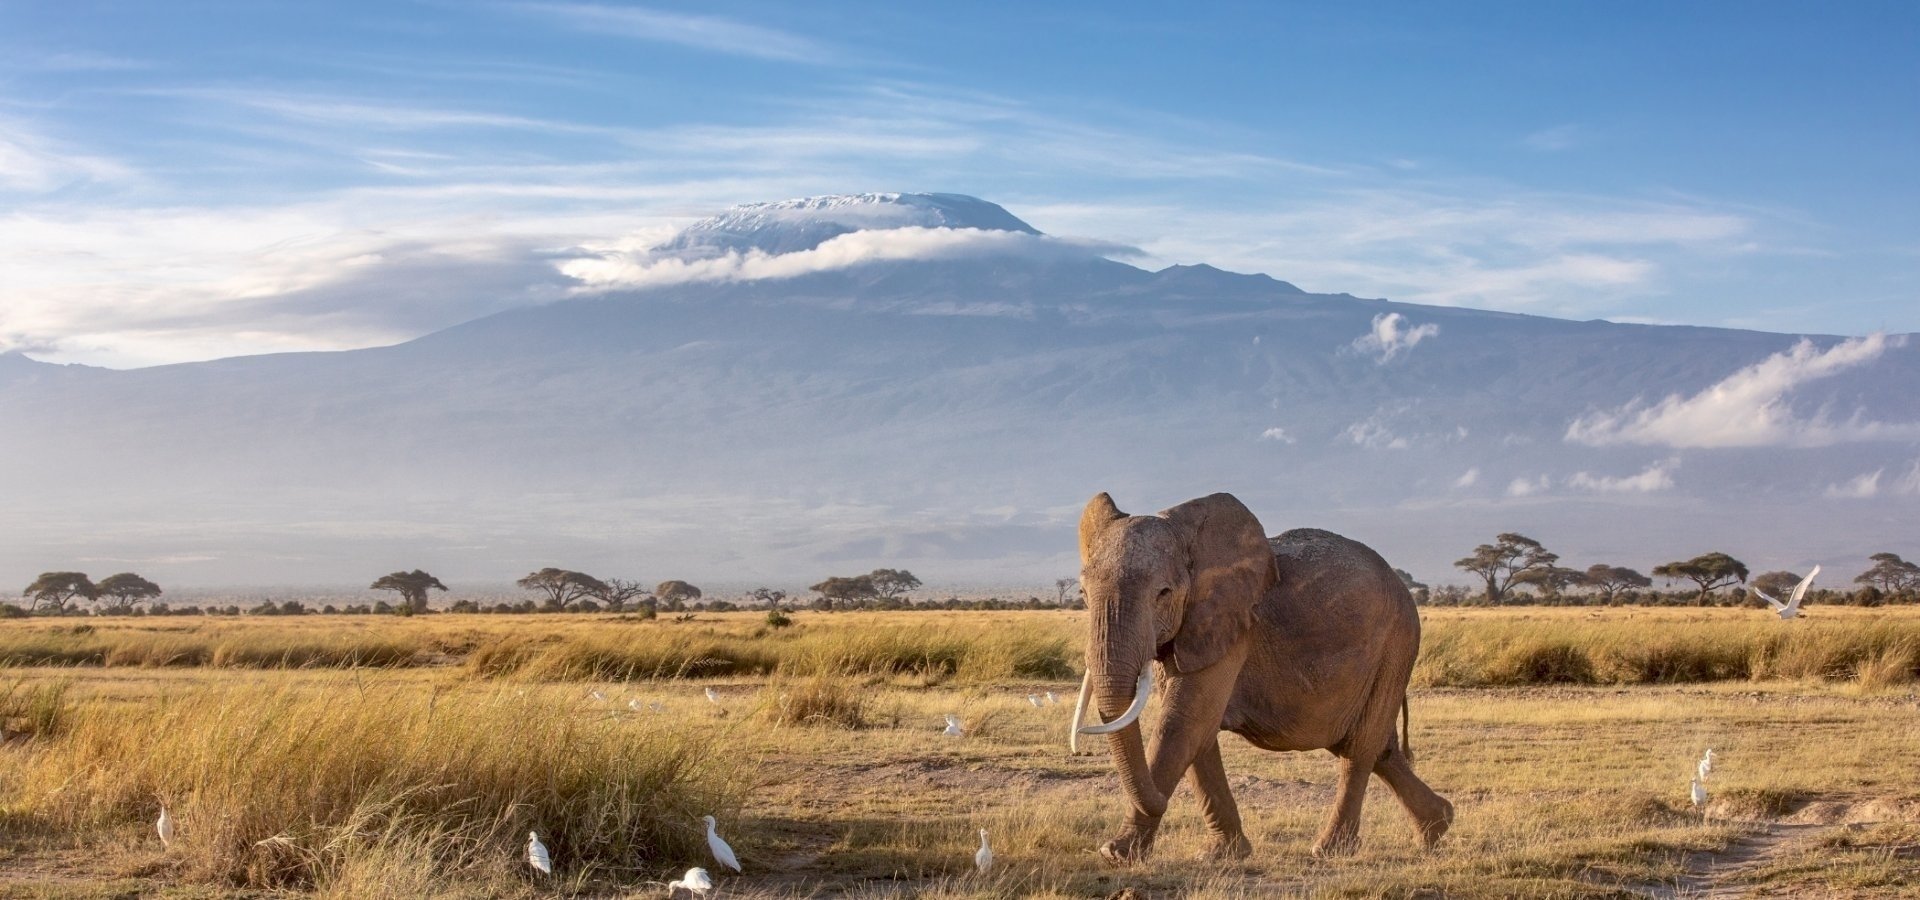 Elephant Kilimanjaro.jpg